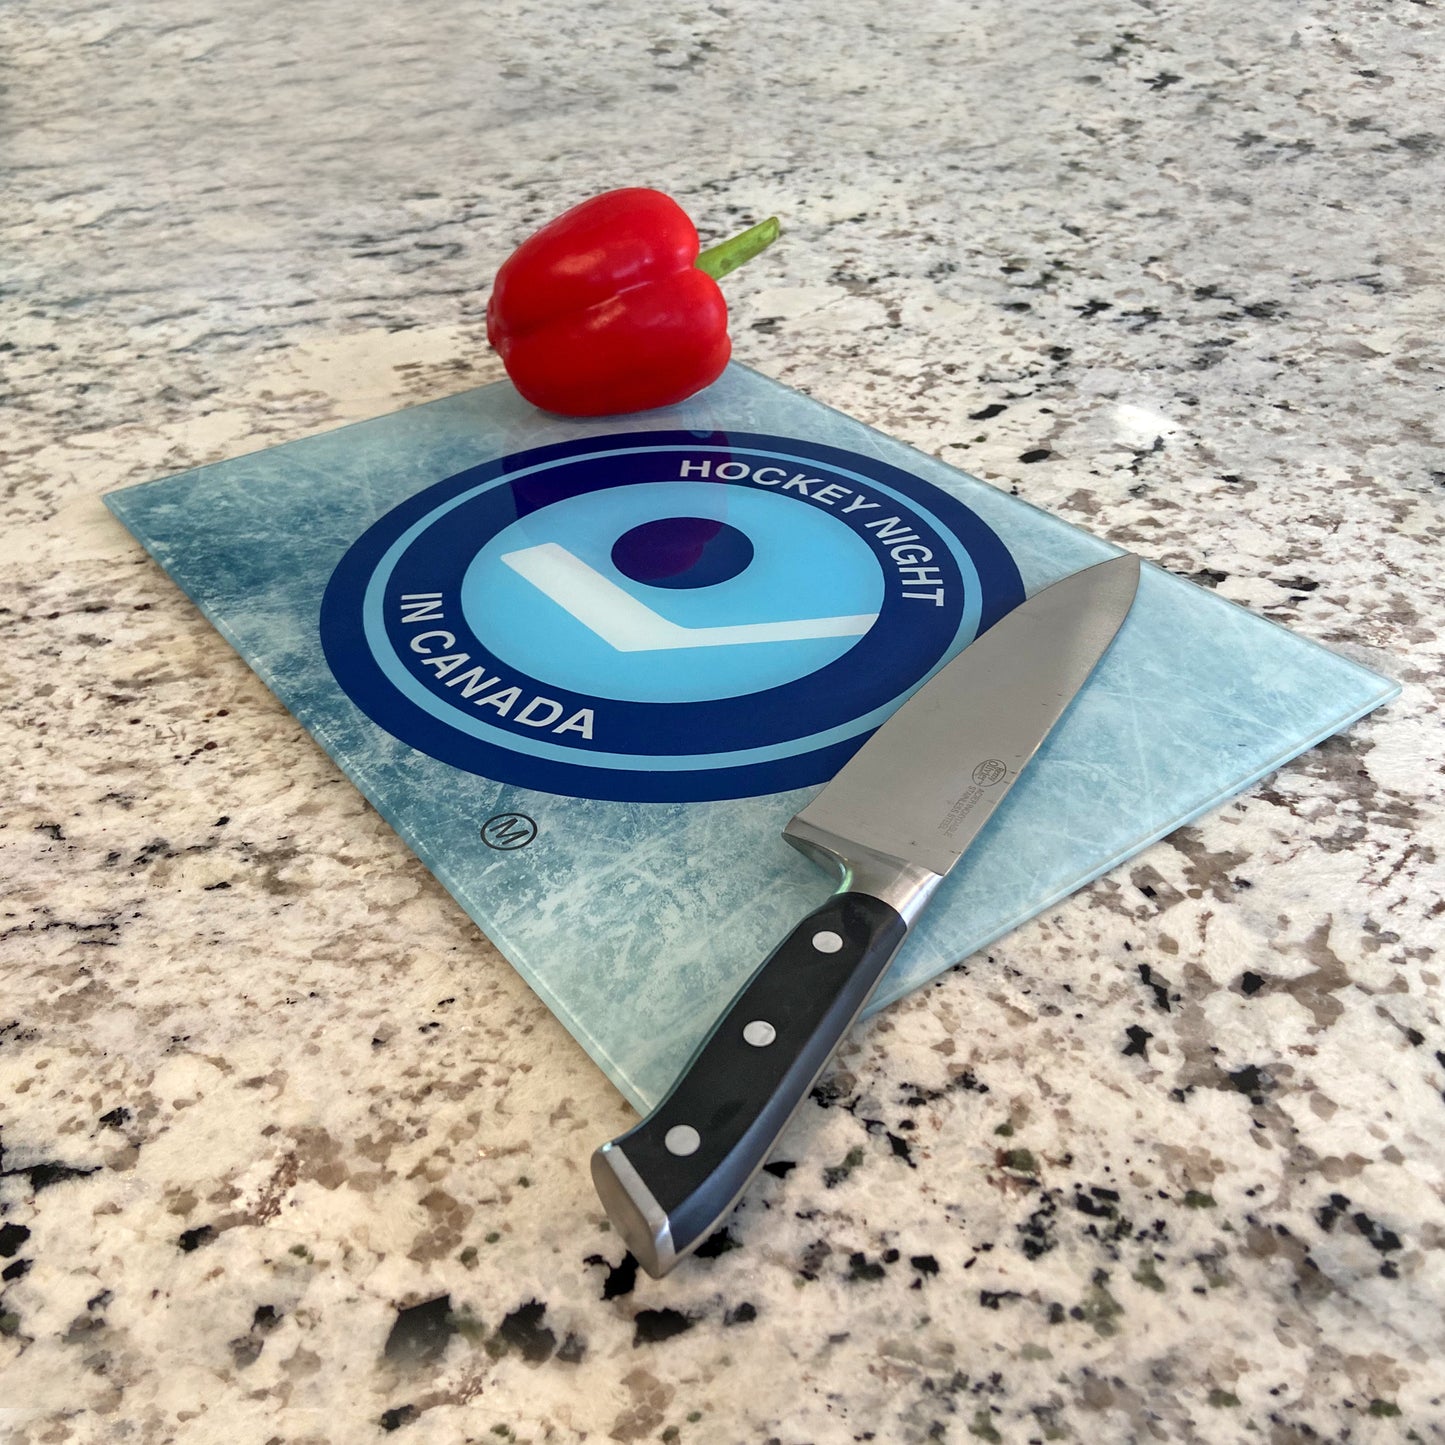 Tempered Glass Cutting Board - Hockey Night in Canada (Retro Logo)